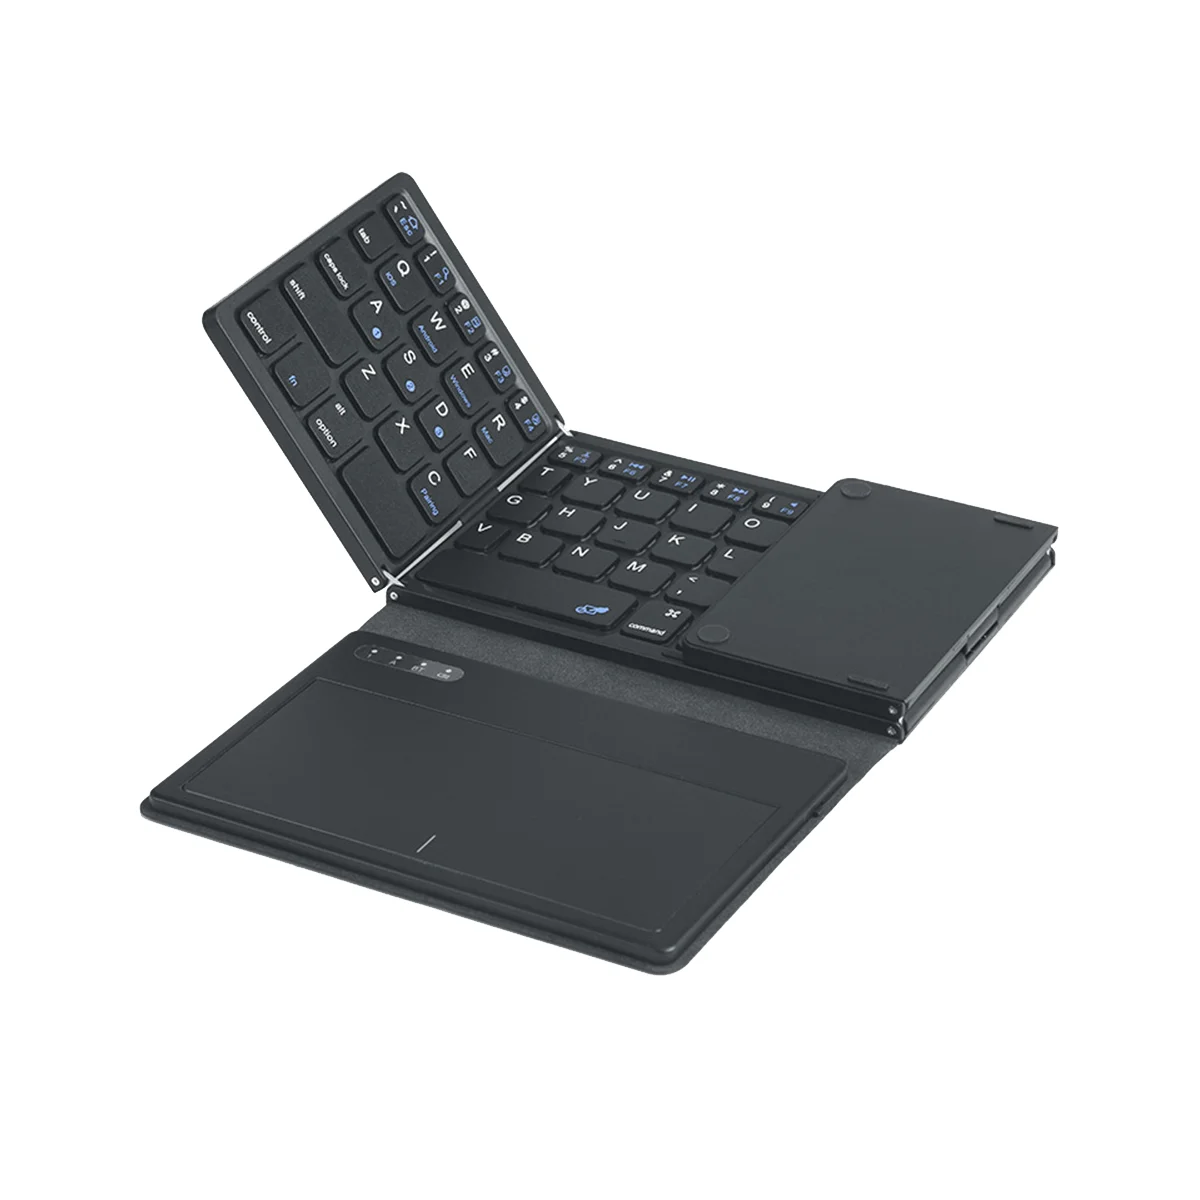 Складная беспроводная клавиатура Bluetooth с тачпадом Ультратонкая карманная складная клавиатура для ПК с IOS, Android, Windows Tablet